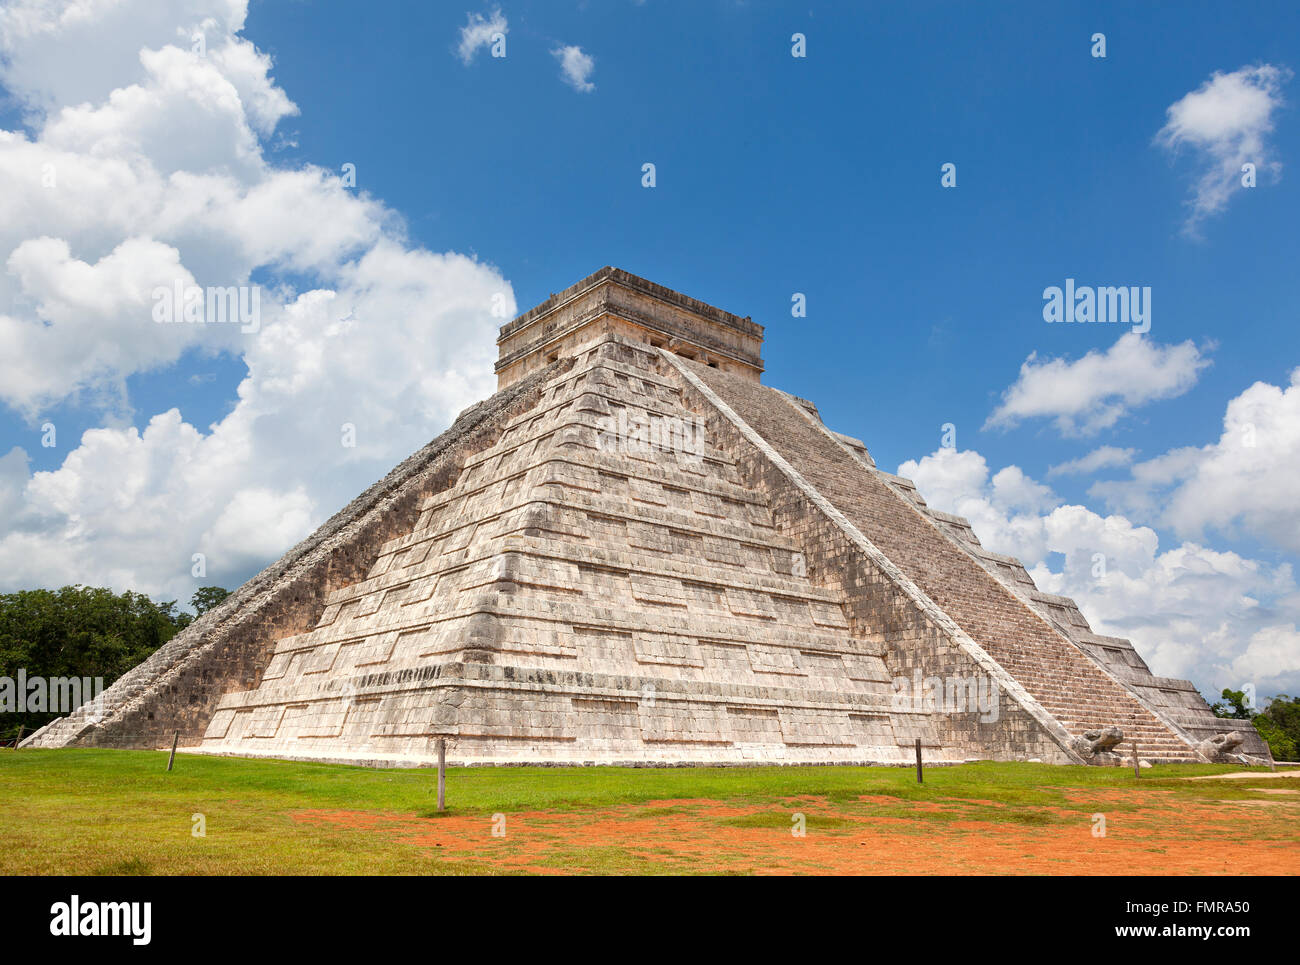 Pyramide de Chichen Itza au Mexique Banque D'Images